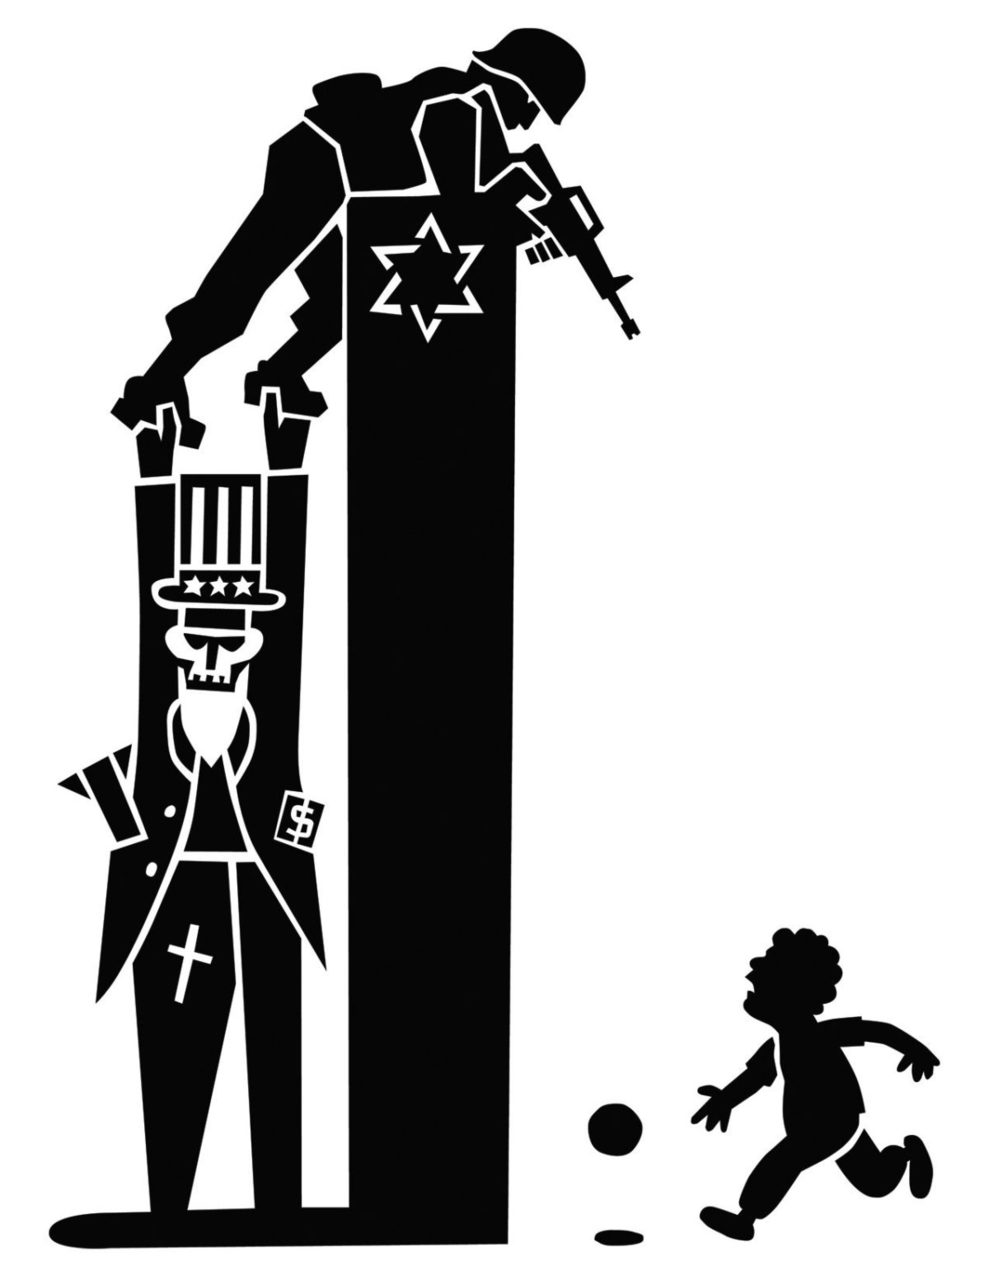 Vignetta umoristica israele palestina